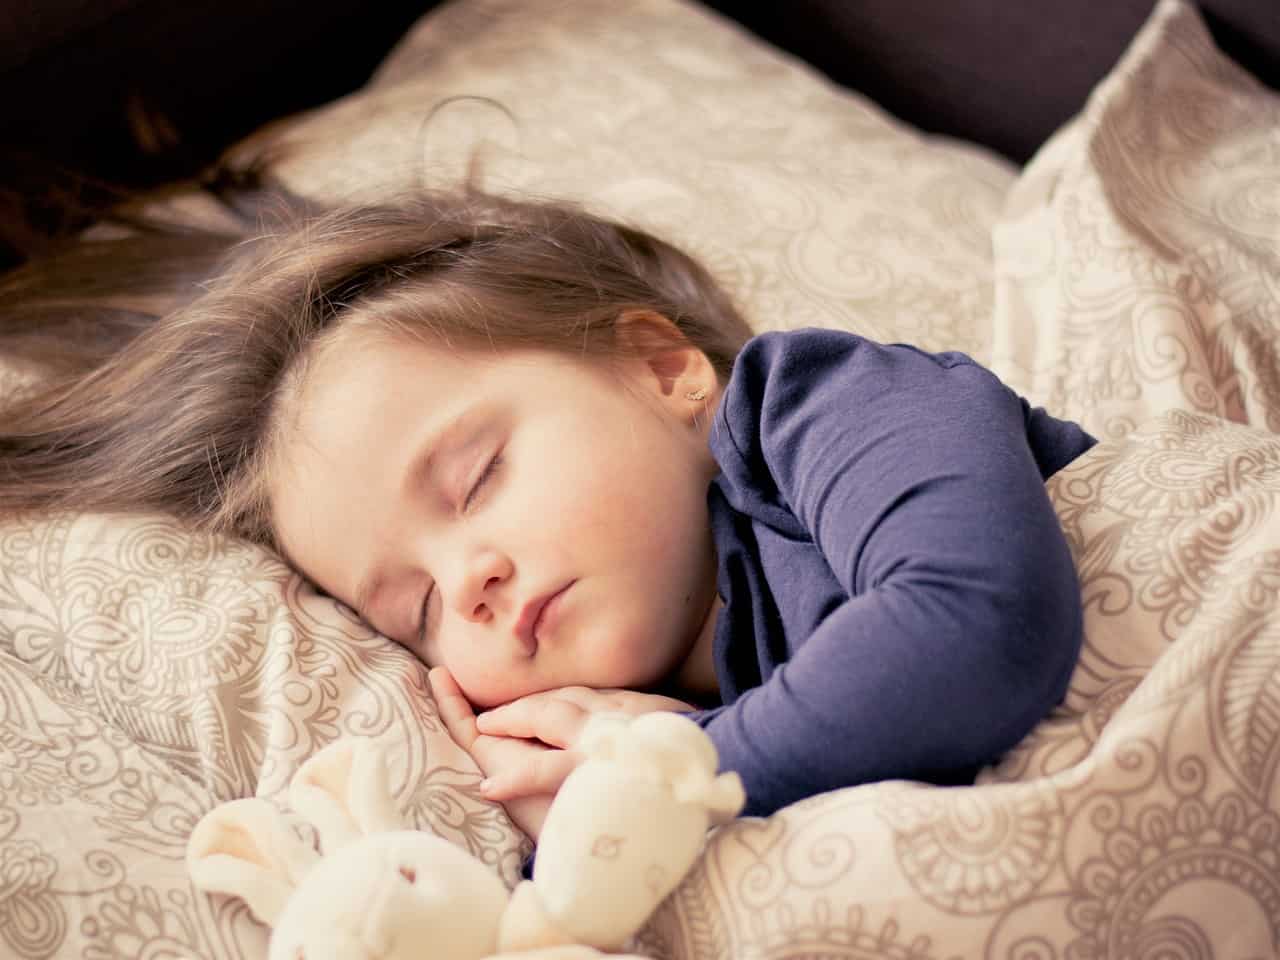 Kids Sleep Regression in